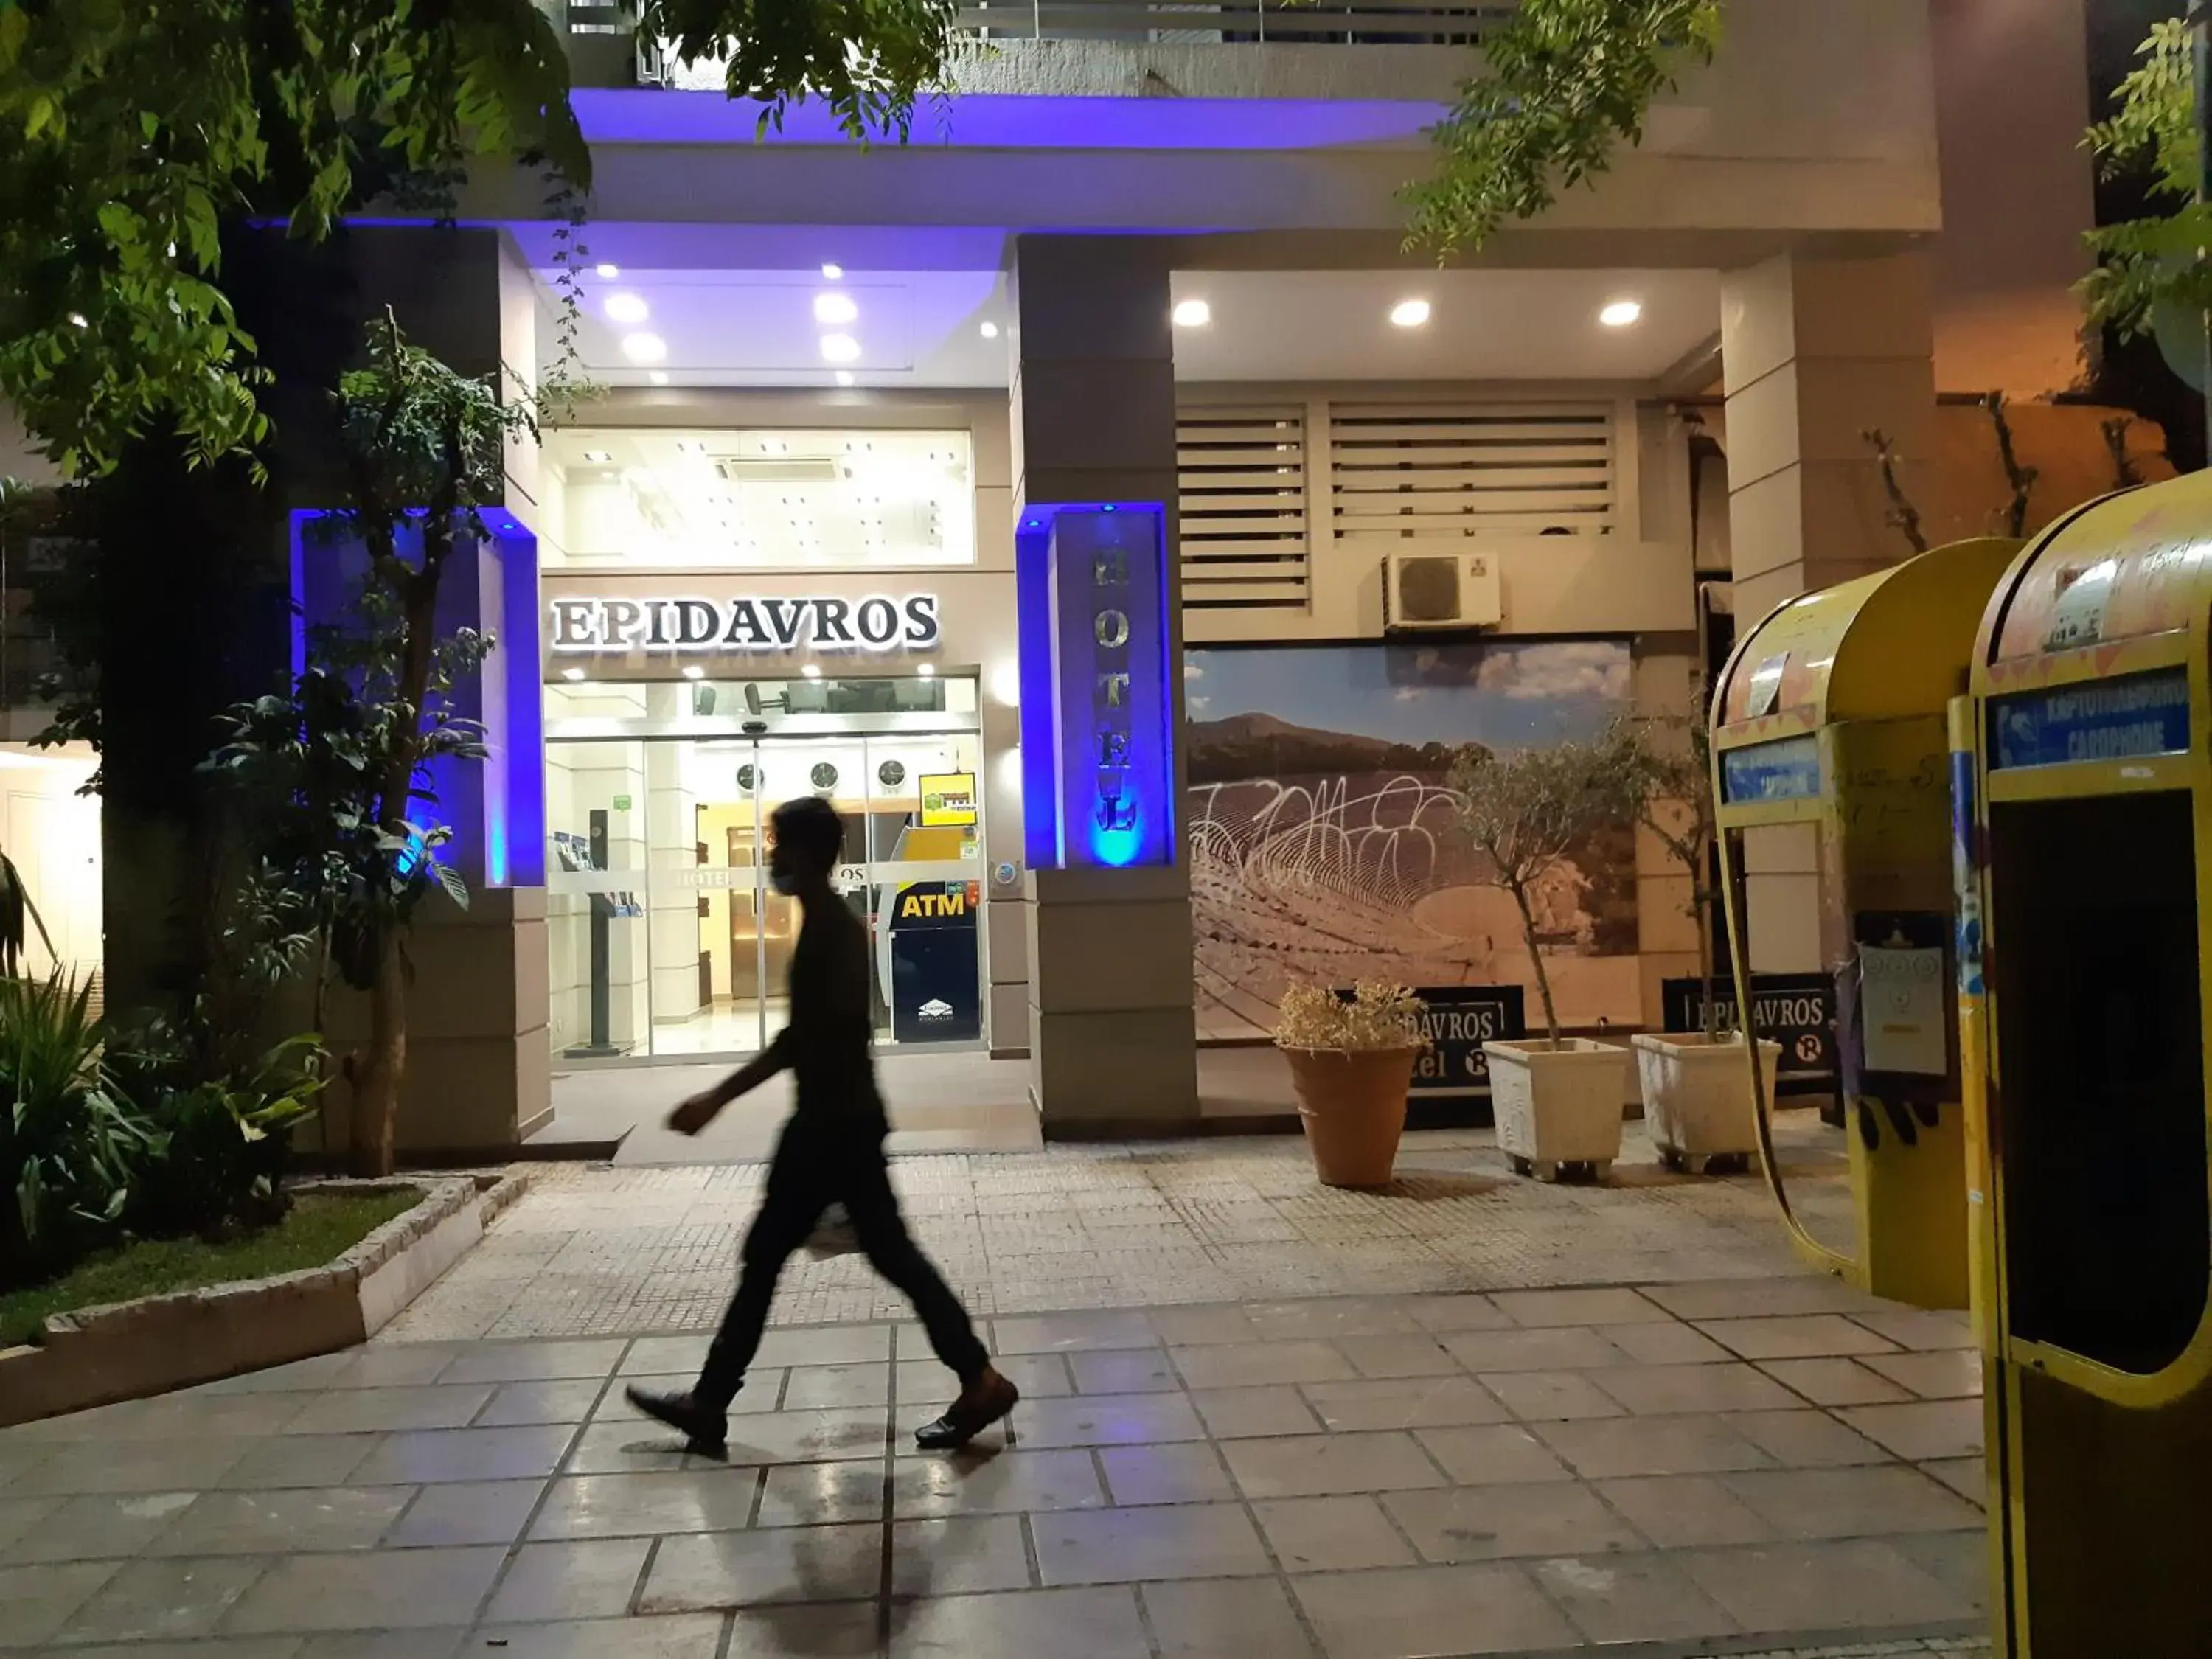 Facade/entrance in Epidavros Hotel